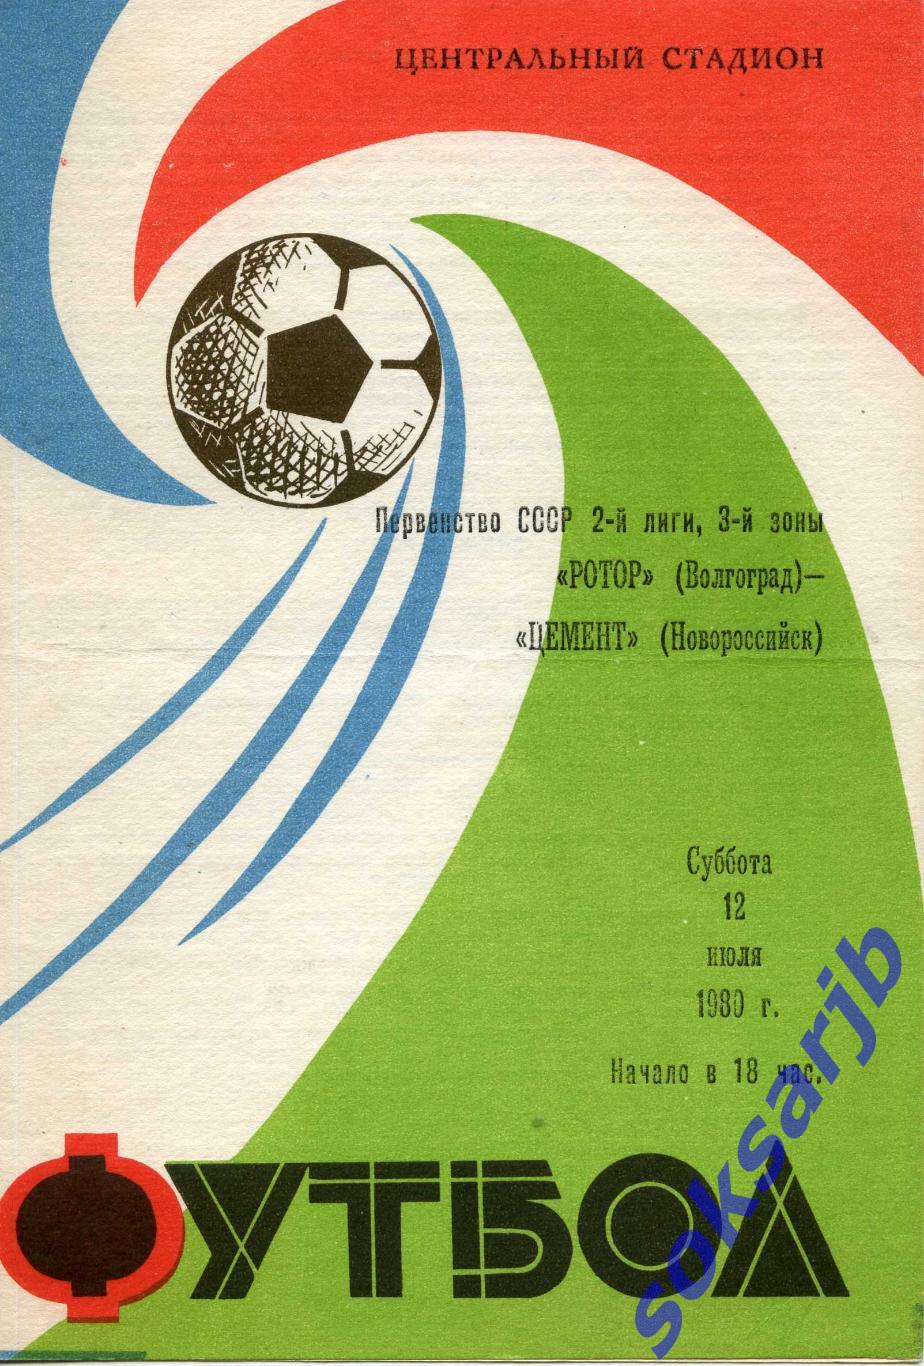 Ротор Волгоград - Цемент Новороссийск. 12.07.1980.